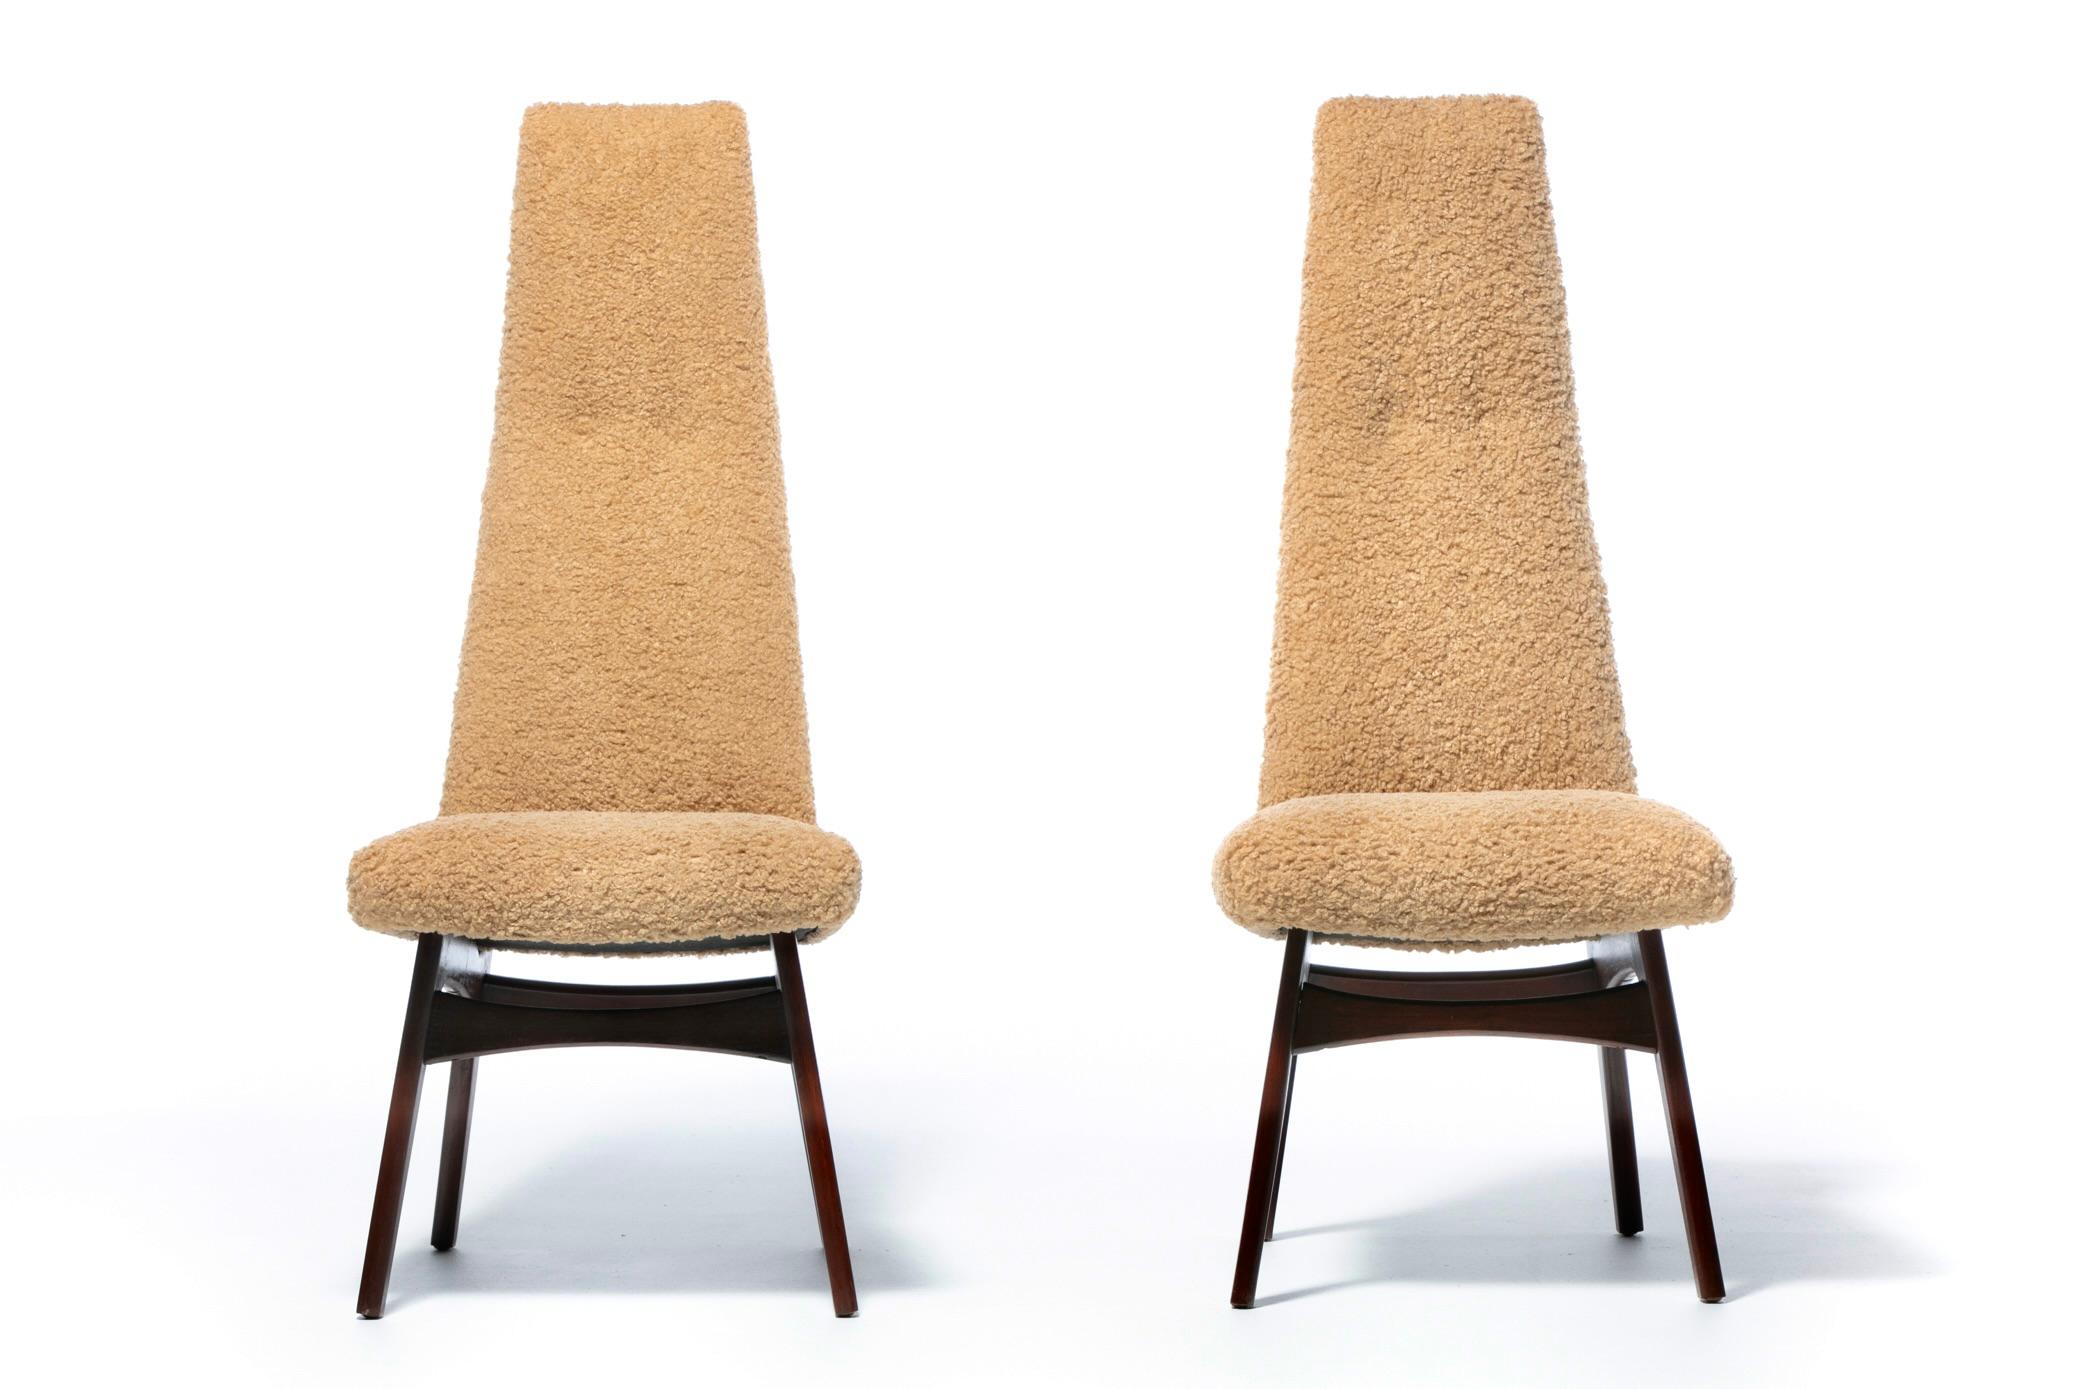 Großer Satz von 12 Mid Century Modern Dining Chairs, entworfen von einem der besten Designer dieser Zeit, Adrian Pearsall. Statement-Stühle für den Essbereich, die jedem Raum eine hochkünstlerische, skulpturale Eleganz verleihen. Perfekt für offene